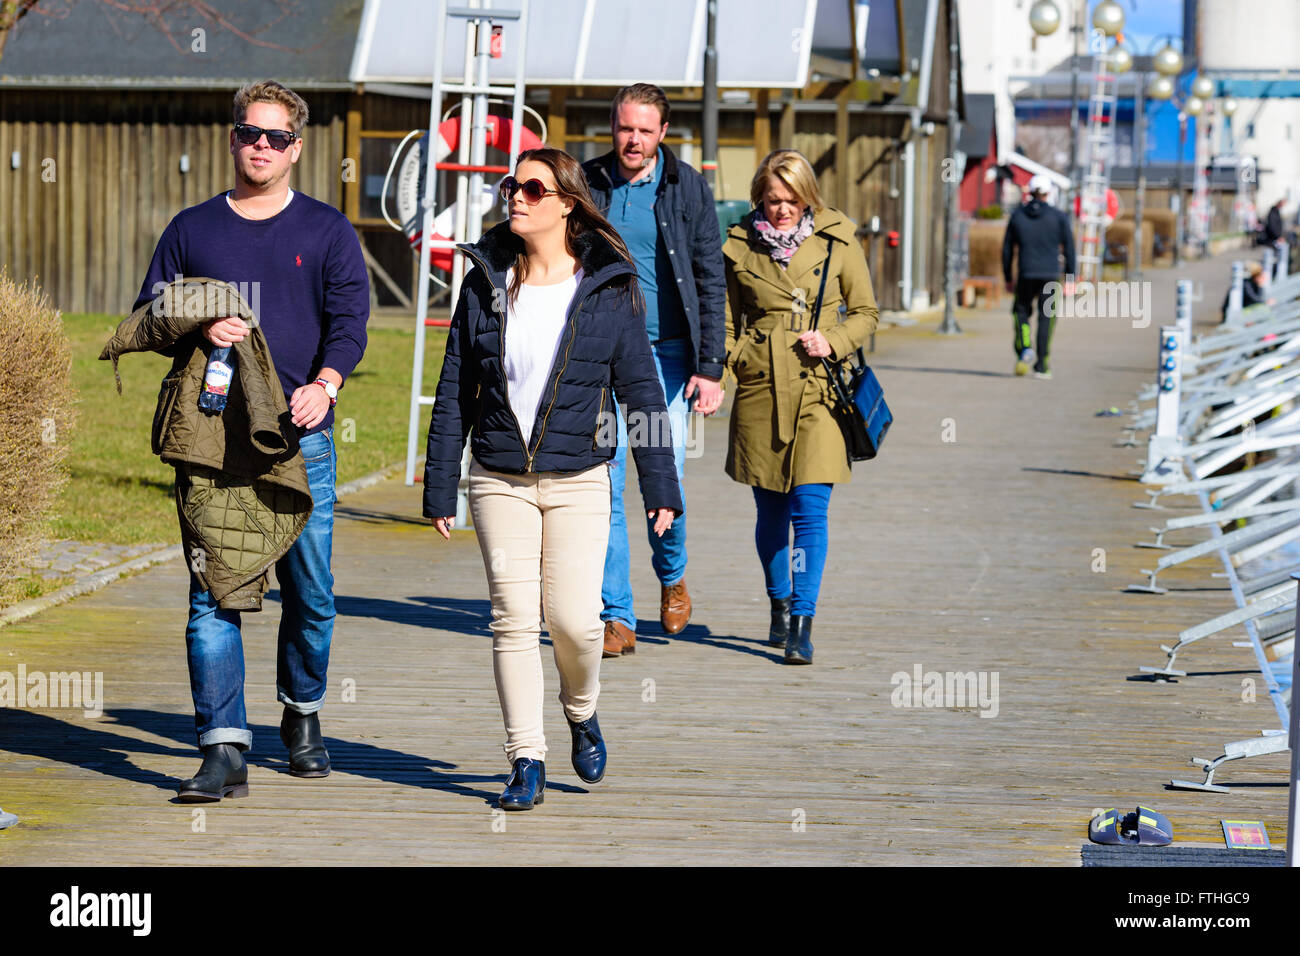 Ahus, Schweden - 20. März 2016: Menschen zu Fuß entlang der berühmten Uferpromenade, genießen einen sonnigen Tag im zeitigen Frühjahr. Echte p Stockfoto